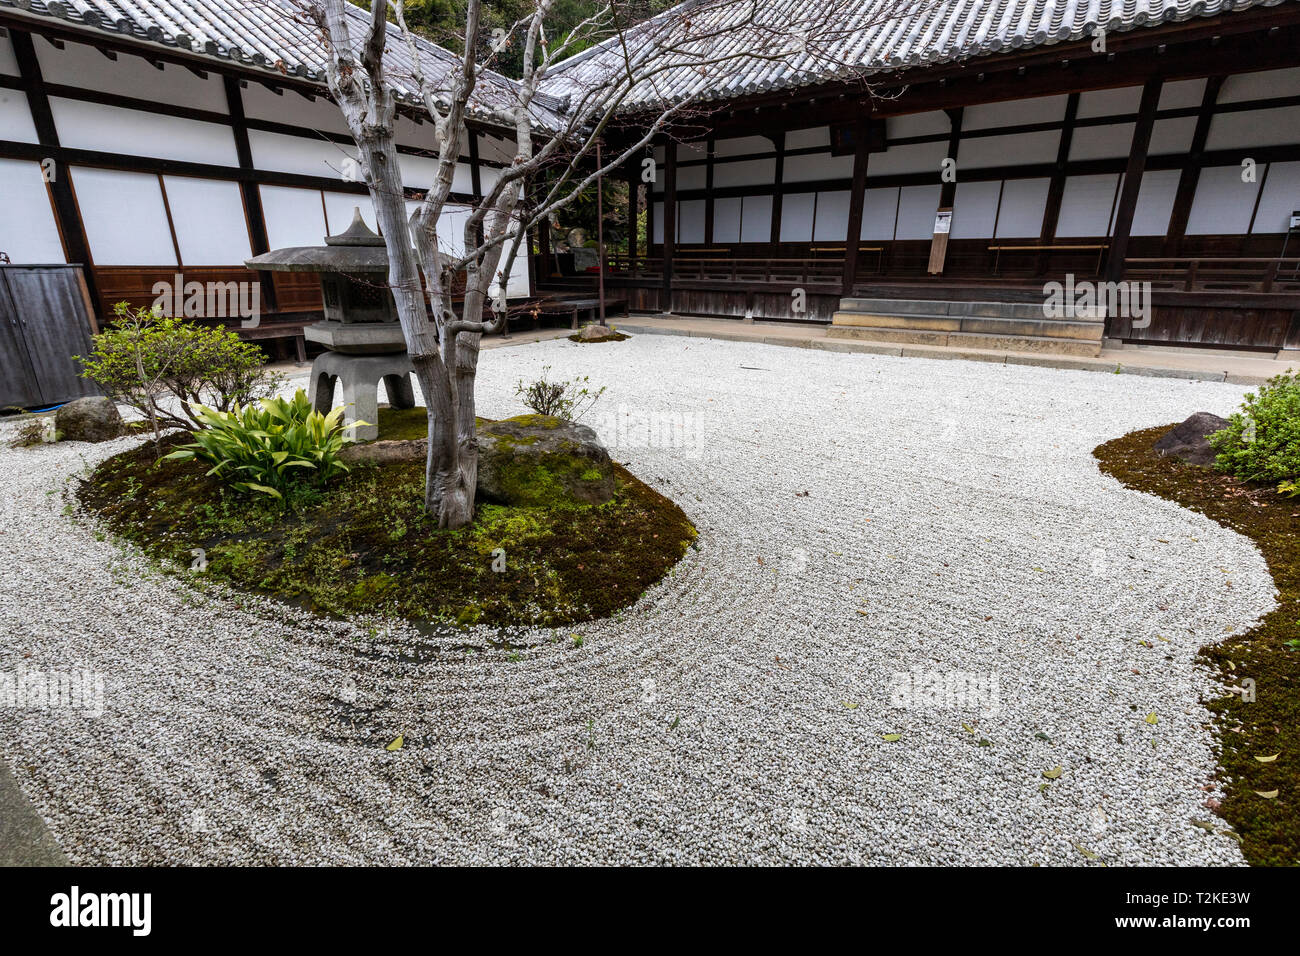 Jodoji tsukiyama Tempel Garten ist ein Garten, der die natürlichen Hügel verwendet und dessen Wasserfall als Hintergrund Landschaft mit Schwerpunkt einen kleinen Teich an Stockfoto